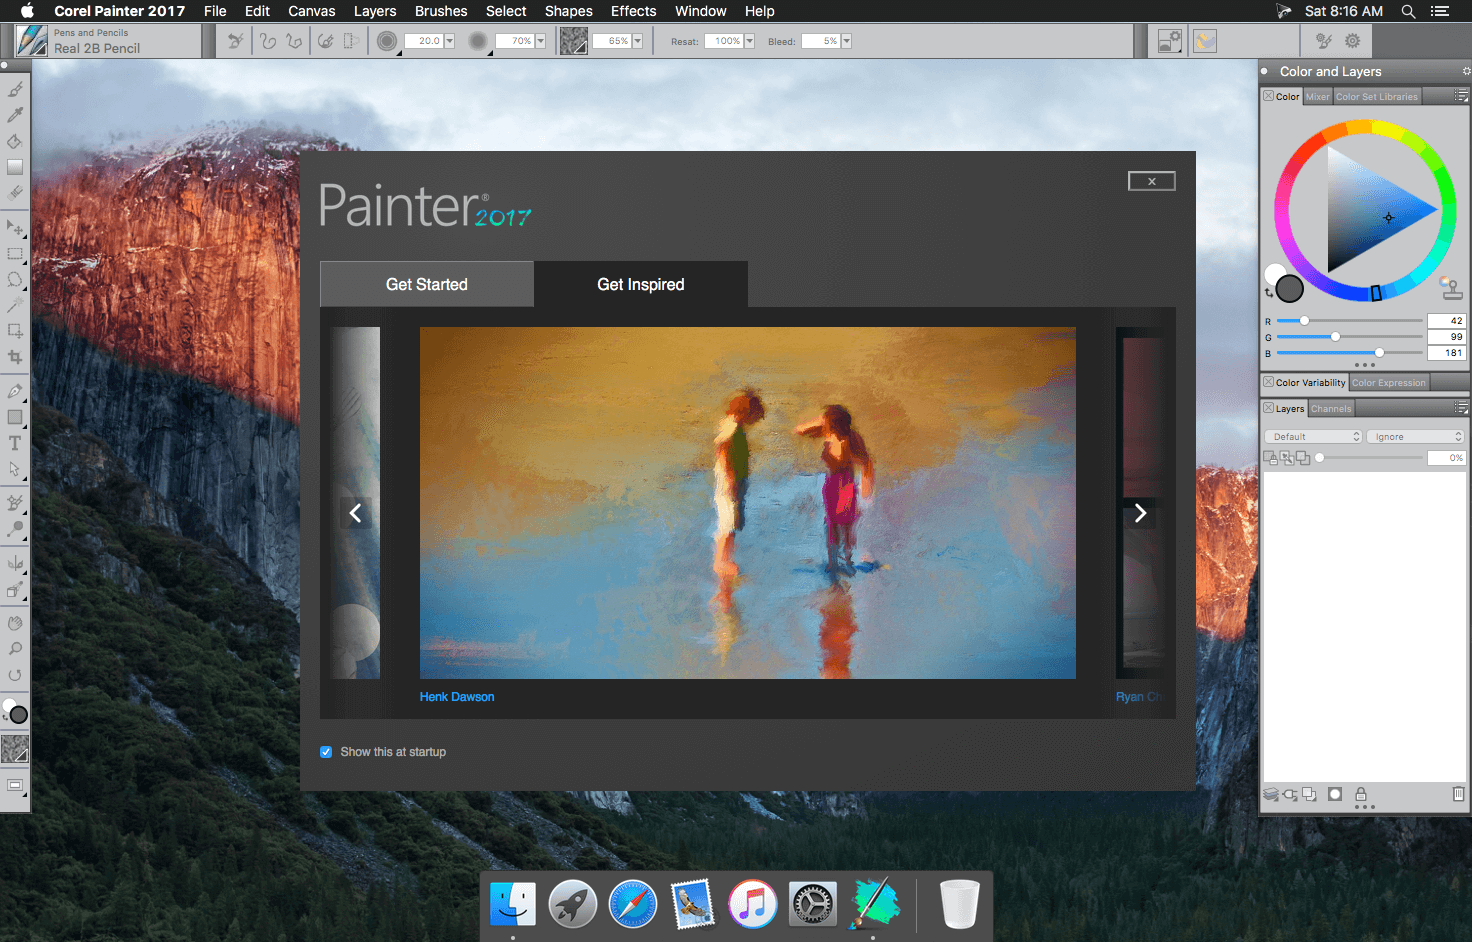 corel painter for mac 0s10.9